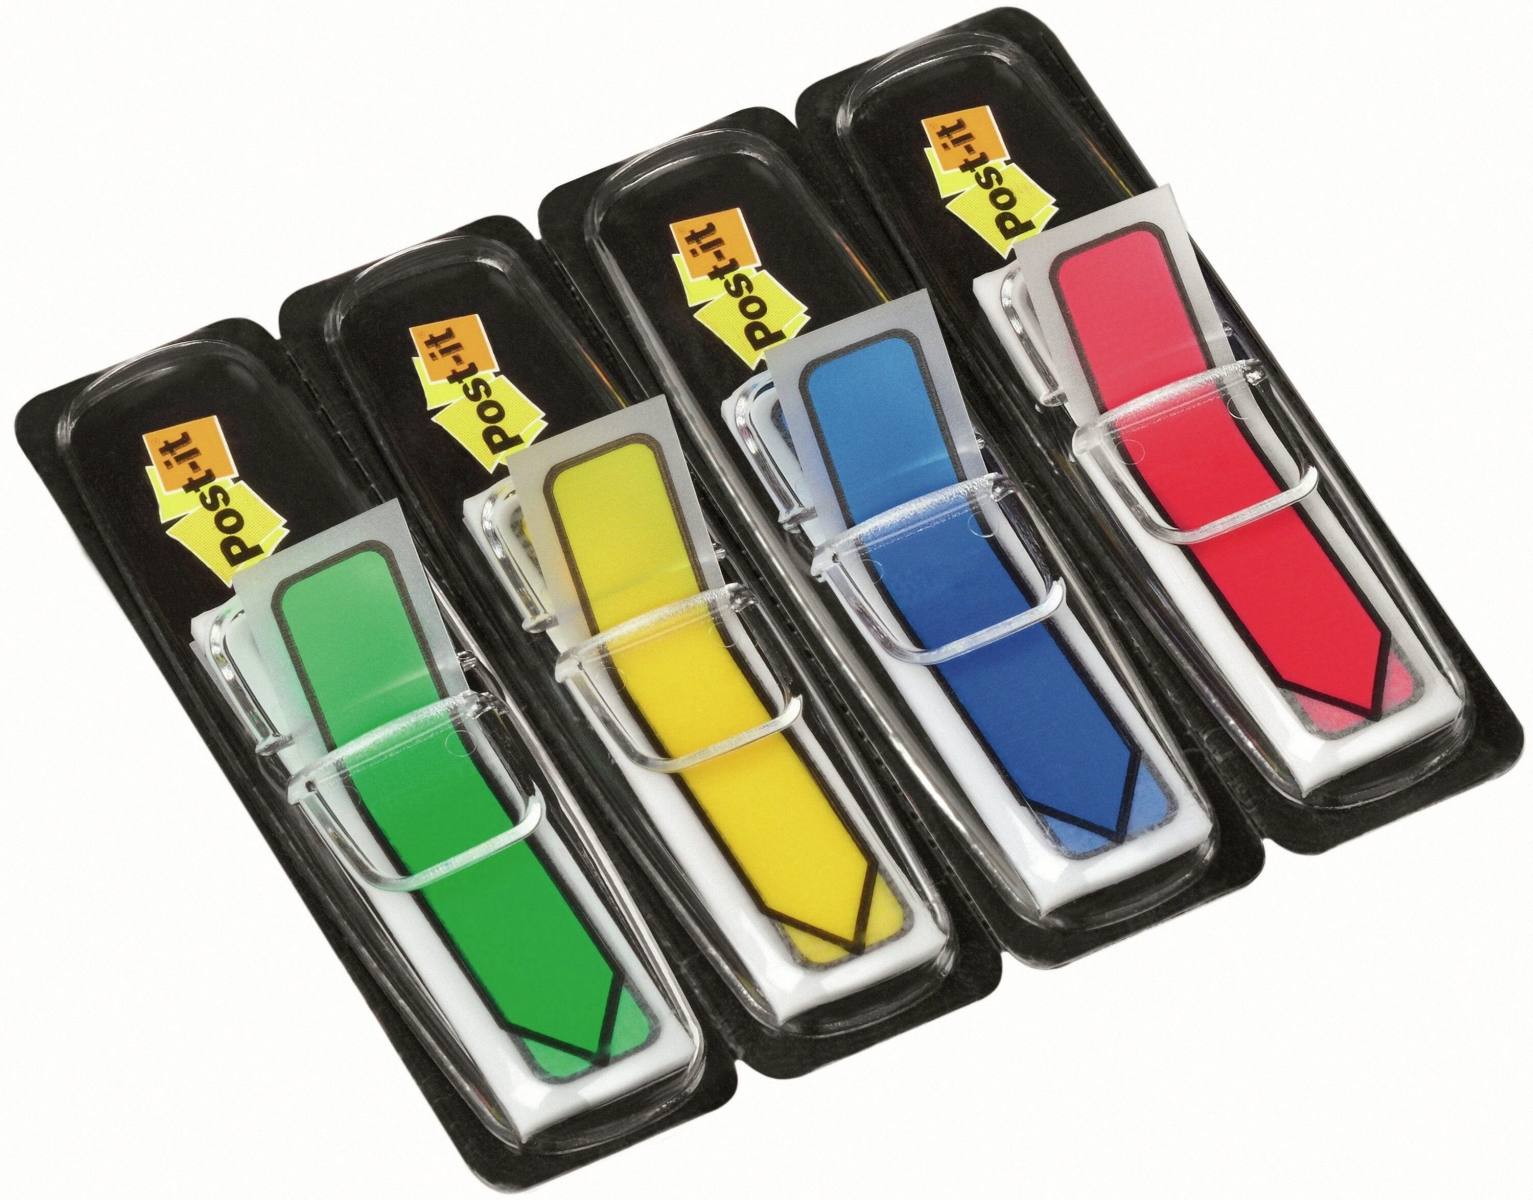 3M Post-it Frecce indice 684ARR3, 11,9 mm x 43,2 mm, blu, giallo, verde, rosso, 4 x 24 strisce adesive in dispenser